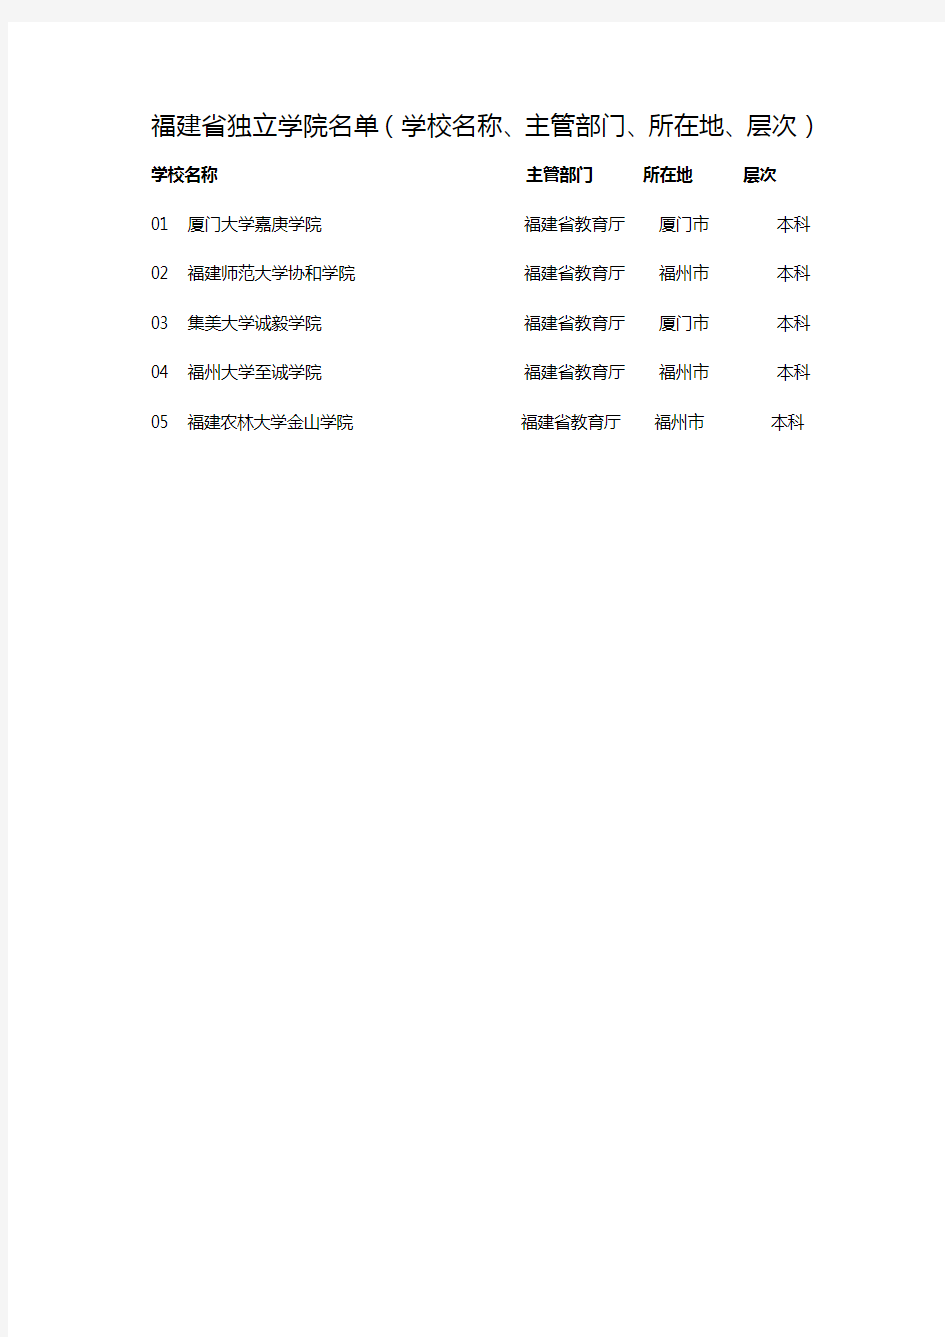 福建省独立学院名单(学校名称、主管部门、所在地、层次)